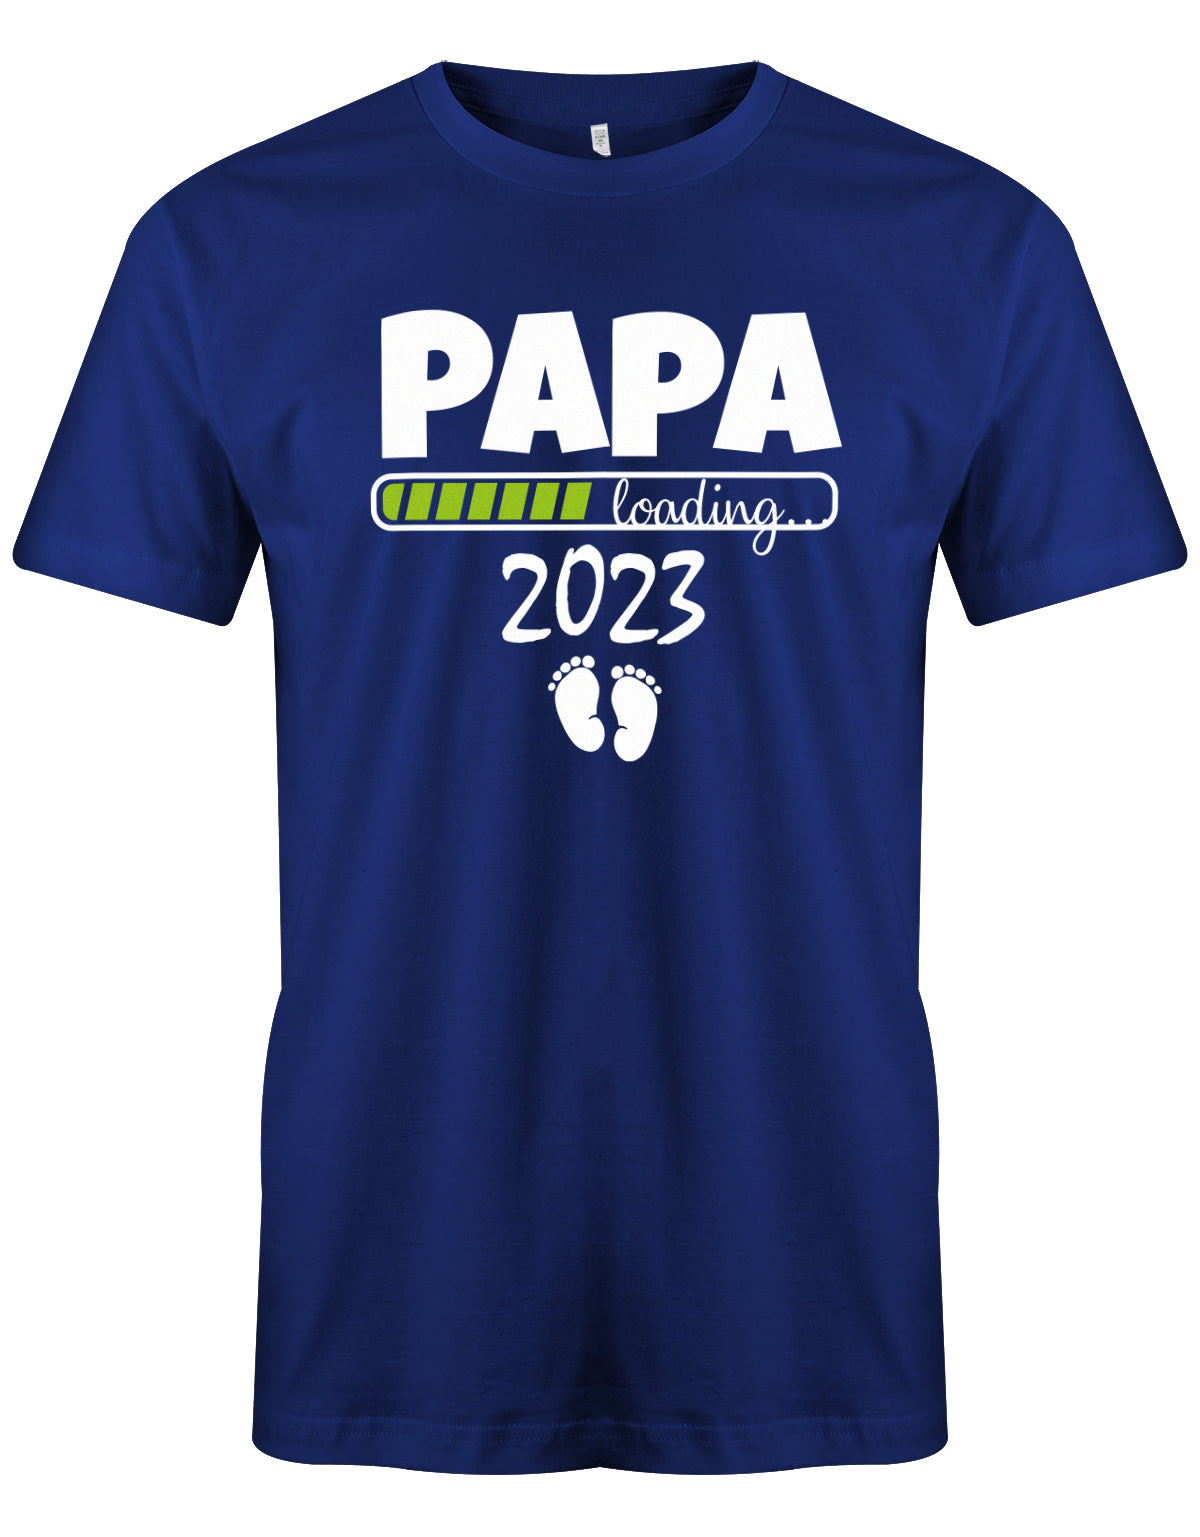 Papa loading 2023 - Geburt - Werdender Papa Shirt Herren Royalblau